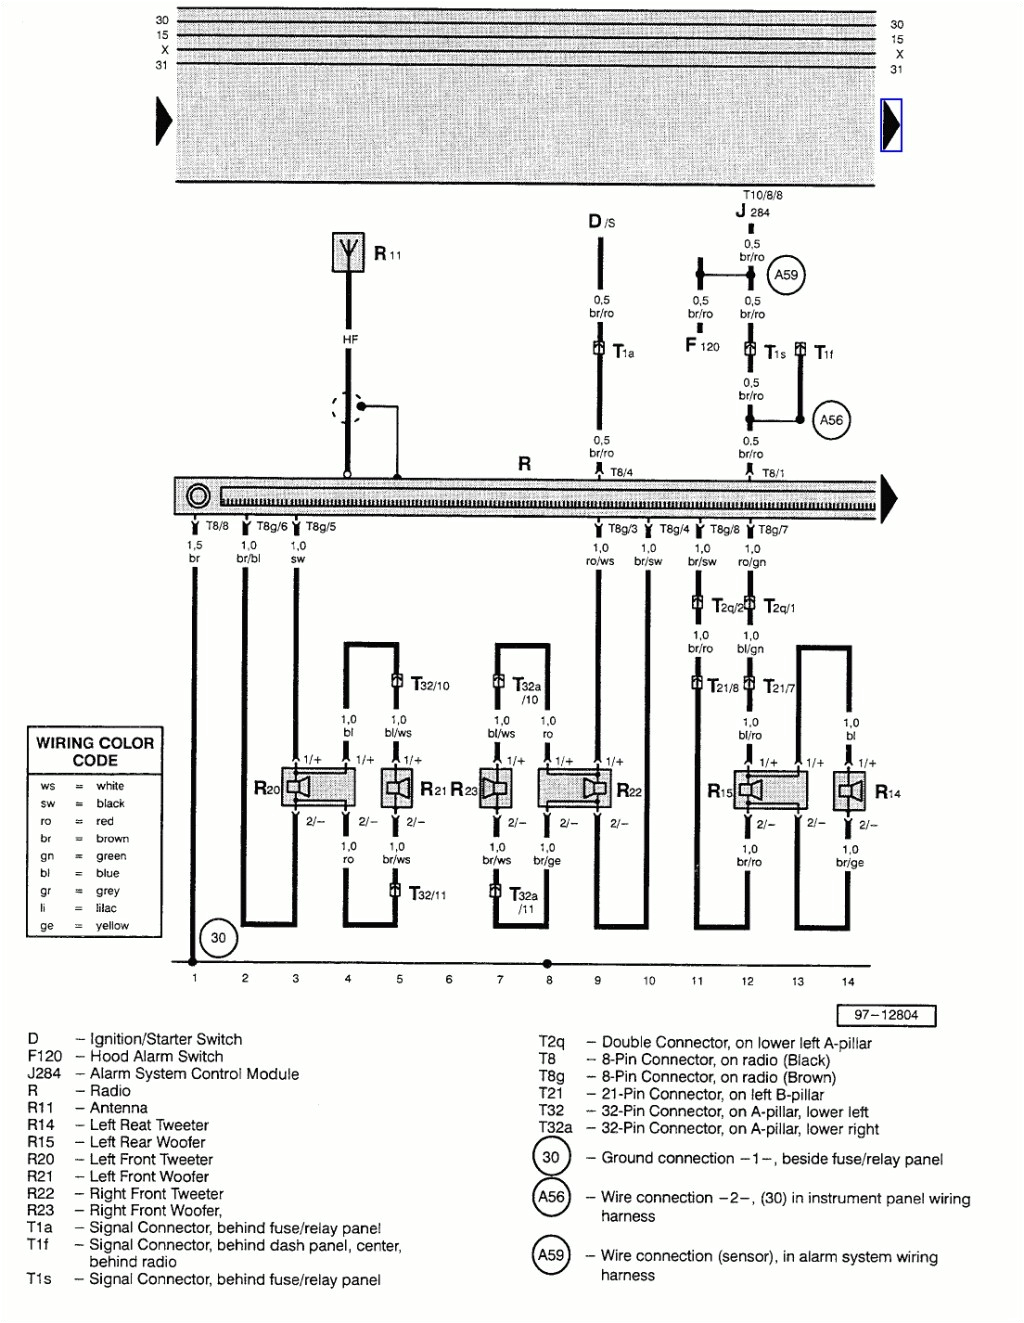 2008 vw rabbit wiring diagram blog wiring diagram vw polo 2008 wiring diagram 2008 vw rabbit